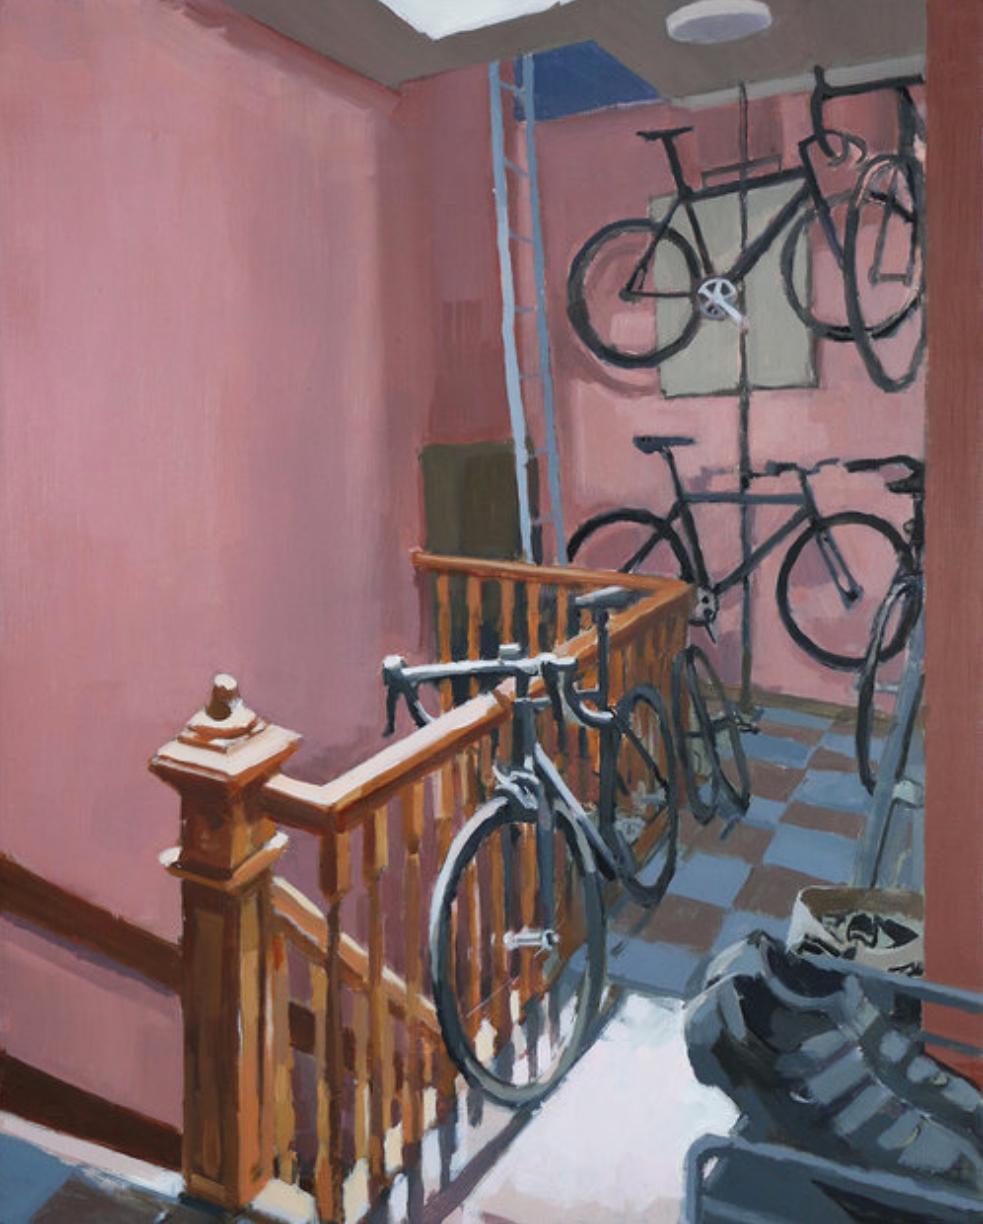 Interior Painting Aaron Hauck - Peinture à l'huile sur panneau de bois « entrées vélos », entrées intérieures figuratives sur bicyclettes